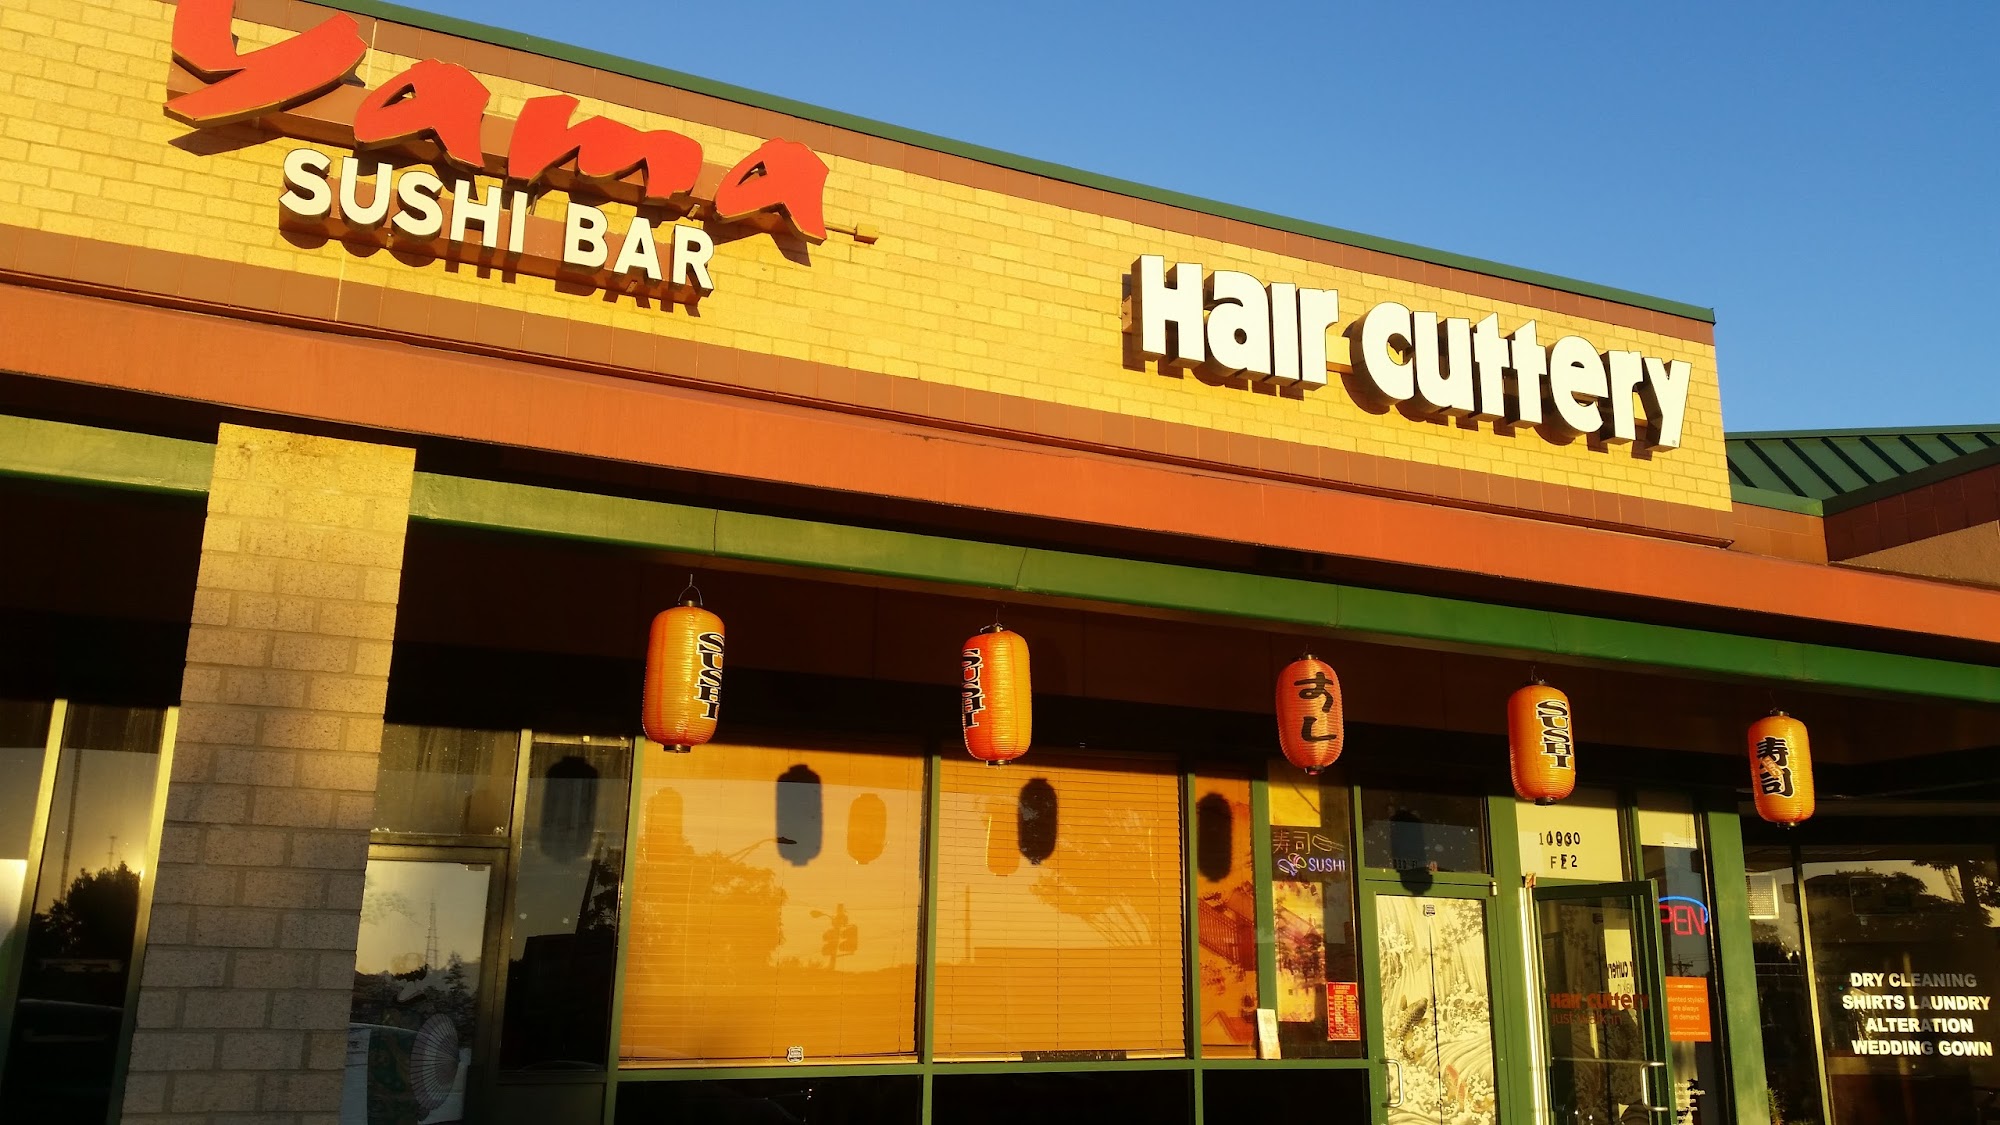 Yama Sushi Bar